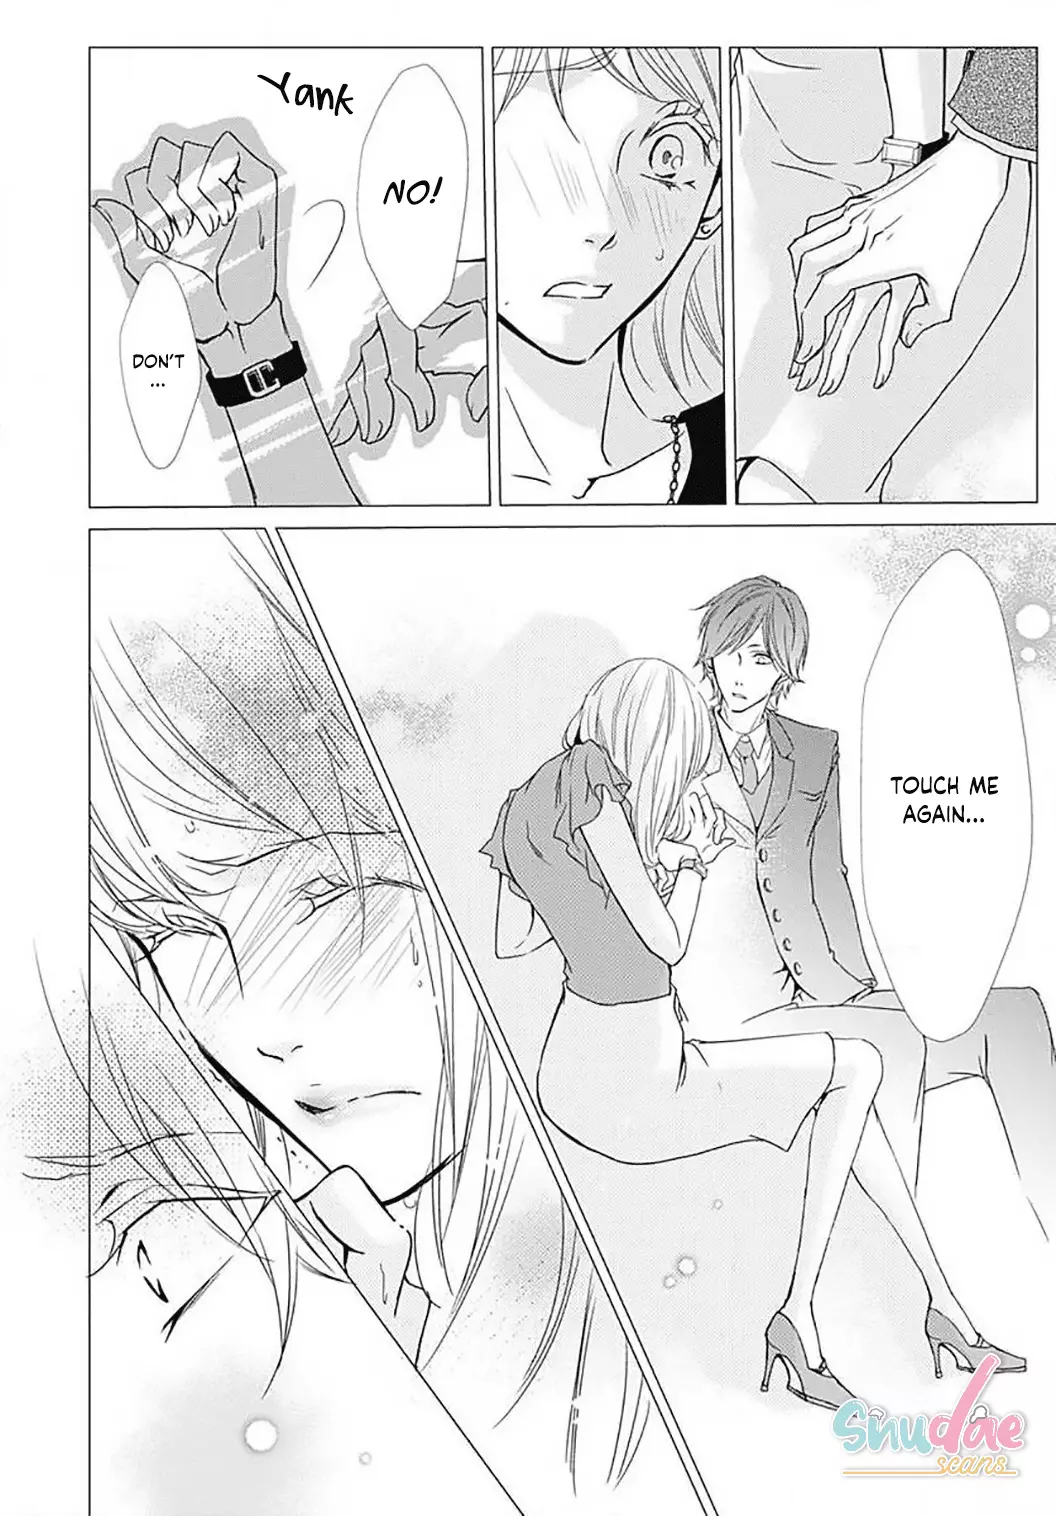 Tappuri No Kiss Kara Hajimete - 25 page 15-14255b0d